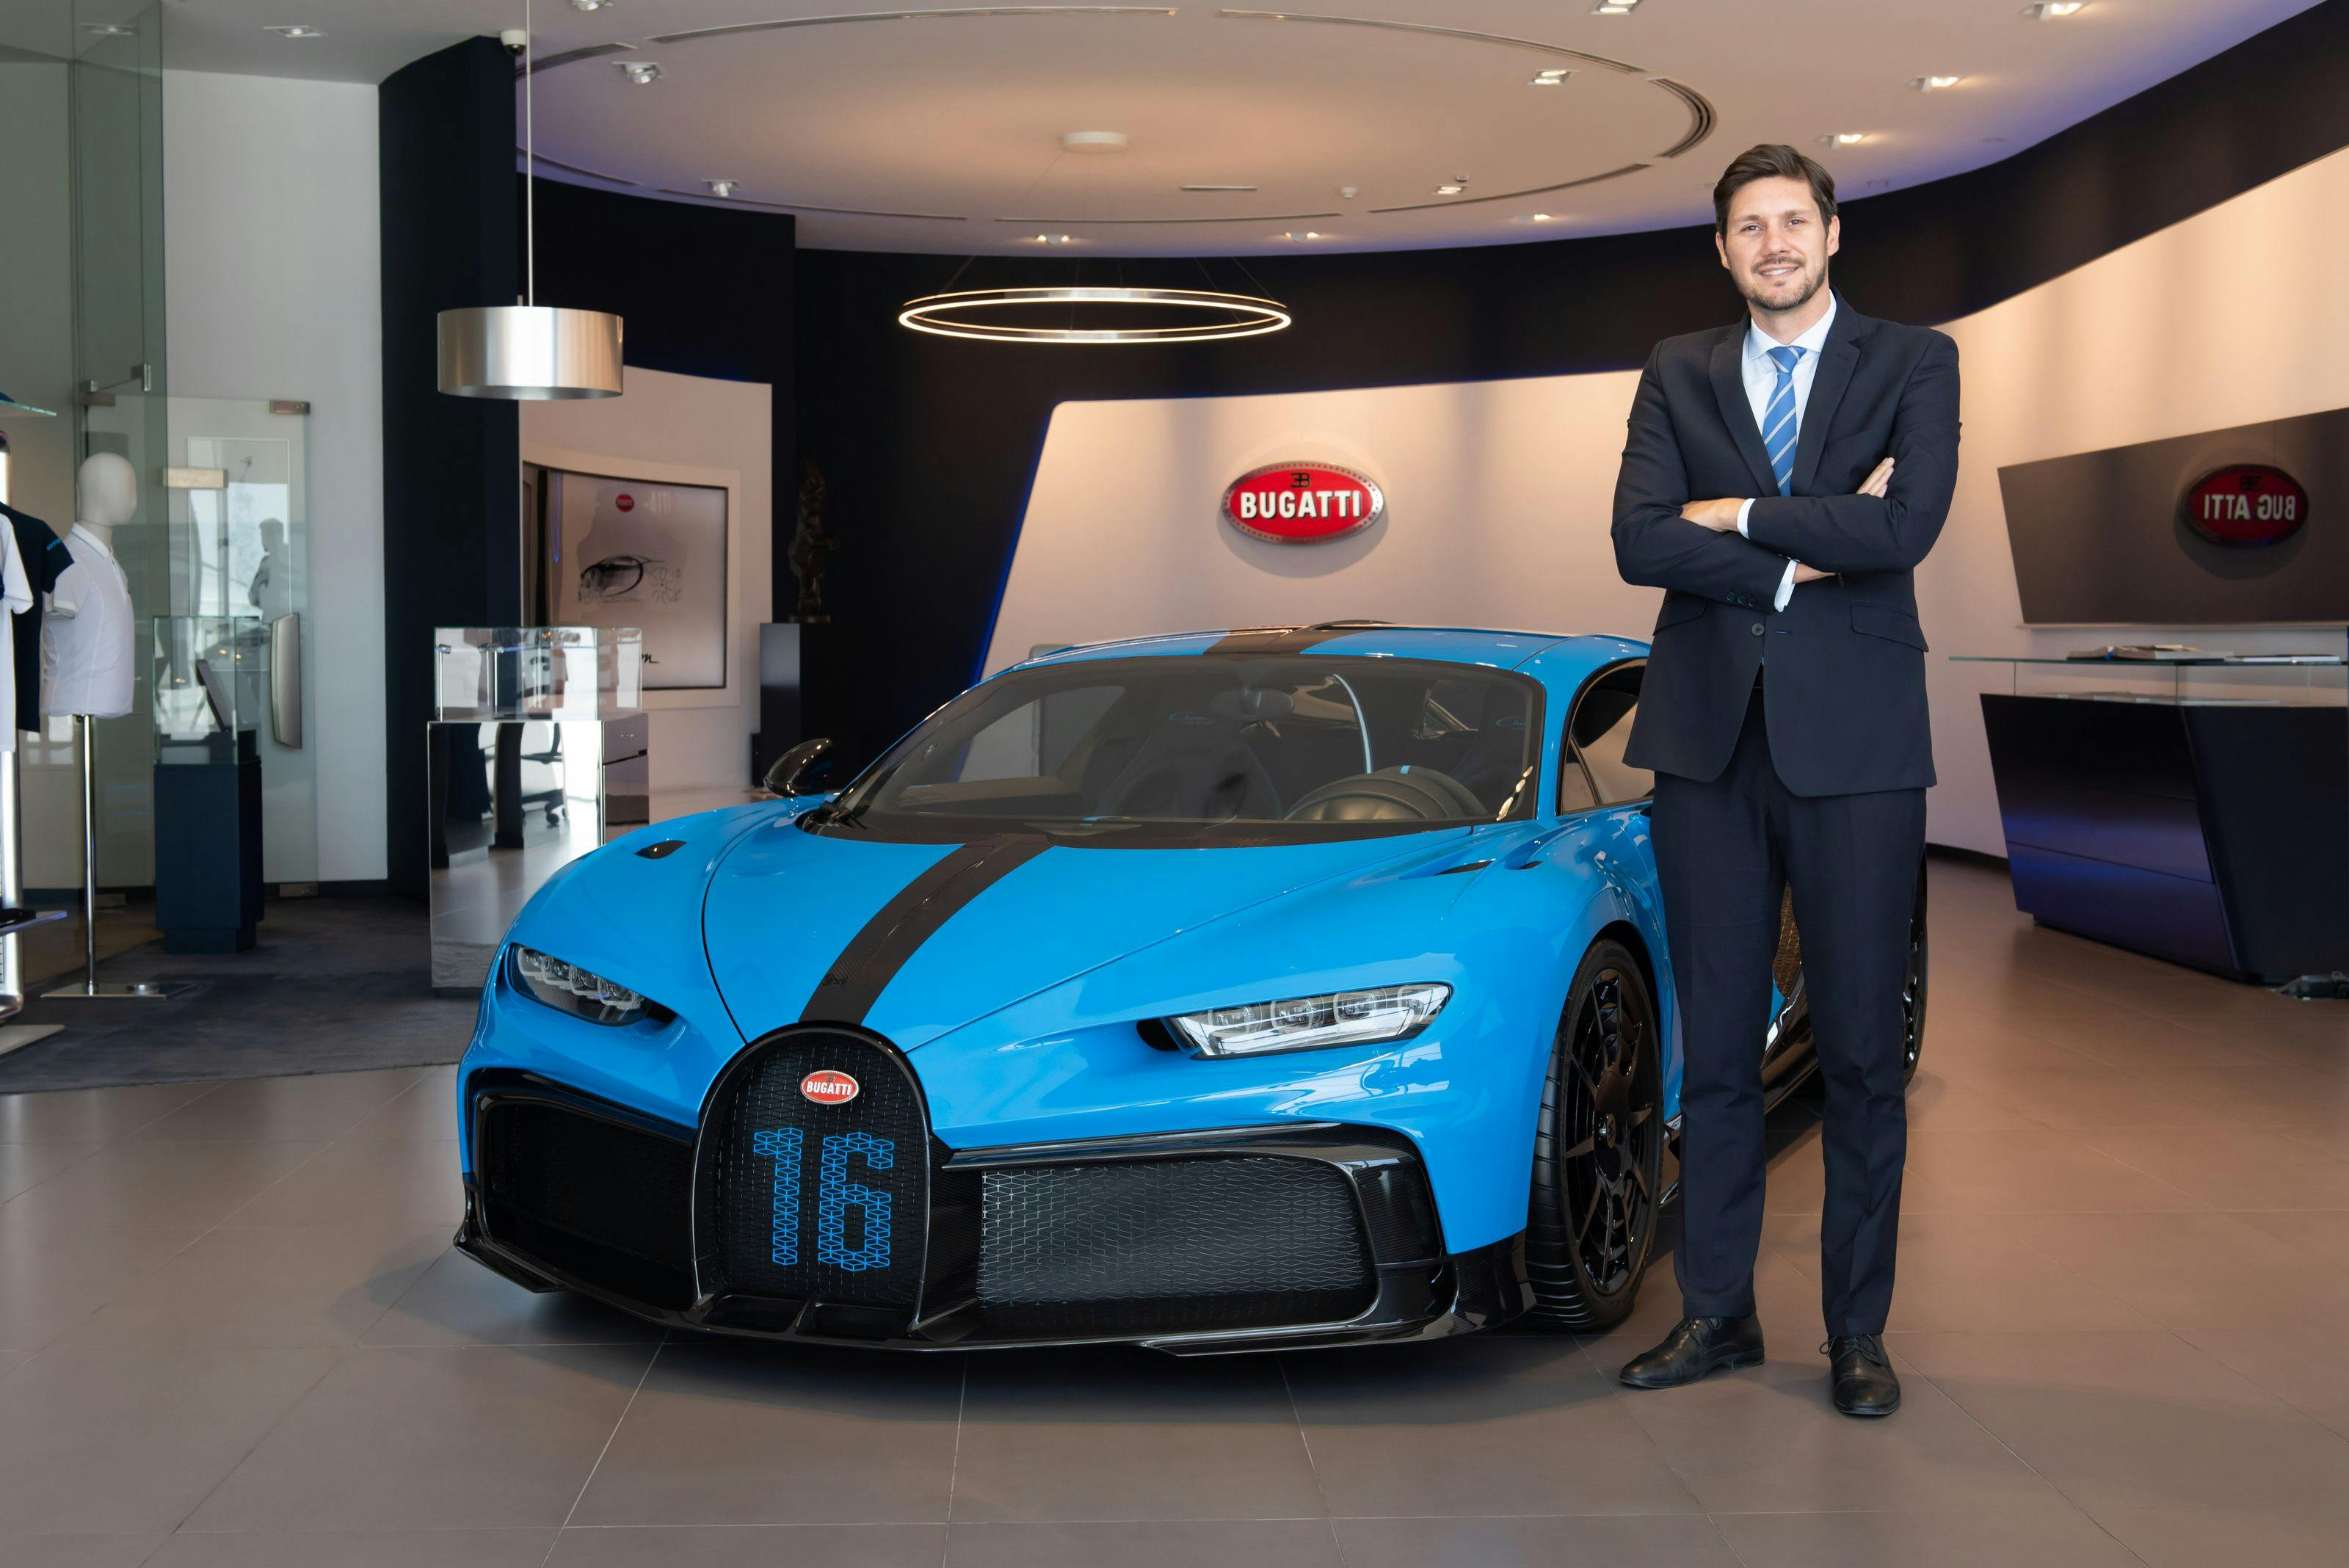 Bugatti im Homeoffice – Kostas Psarris und die MEA-Region